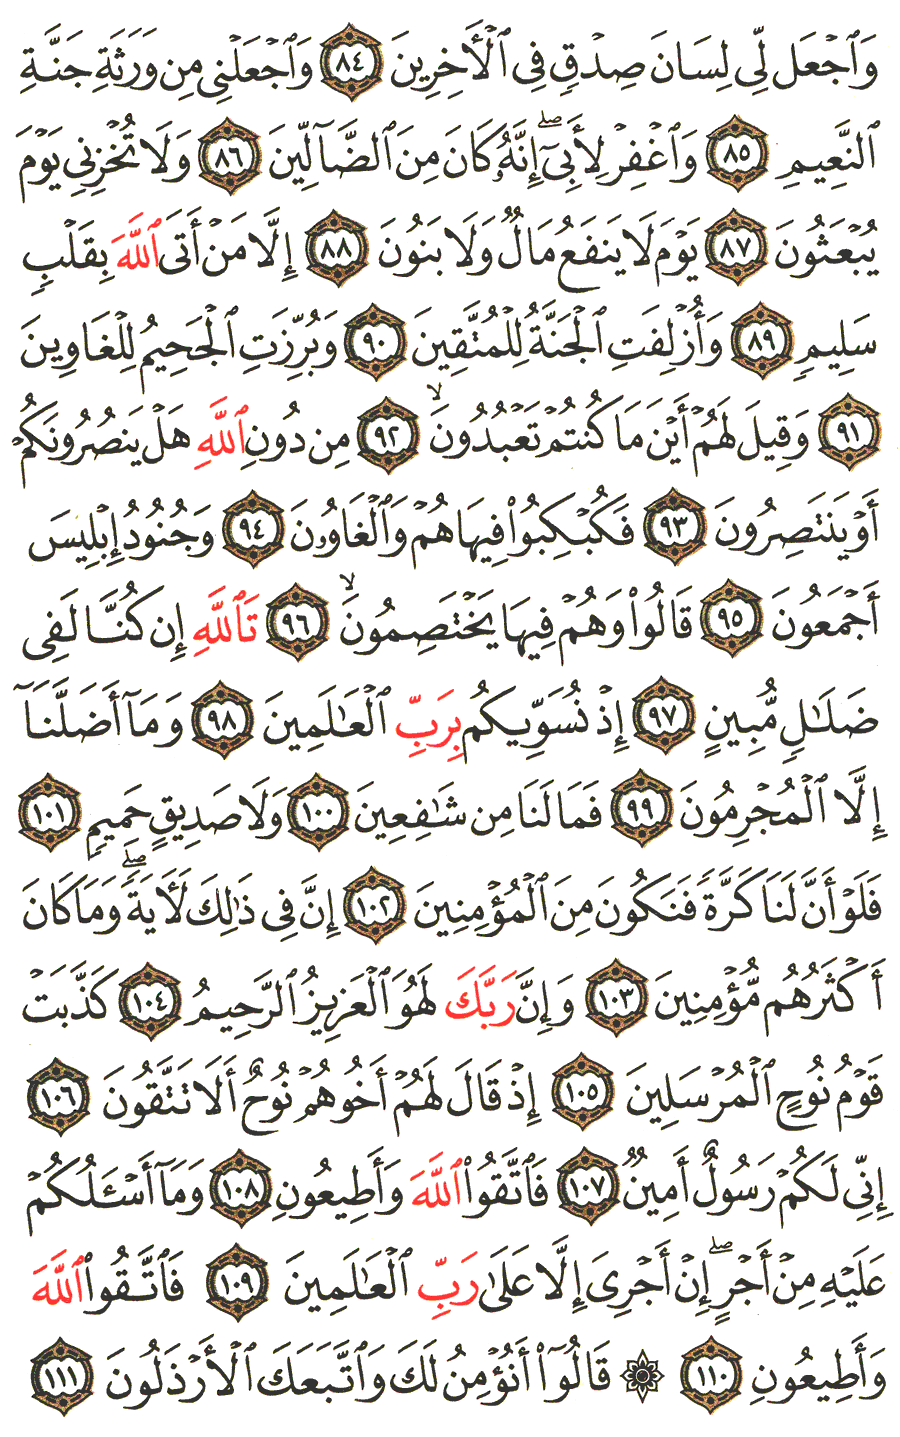 الصفحة رقم 371  من القرآن الكريم مكتوبة من المصحف